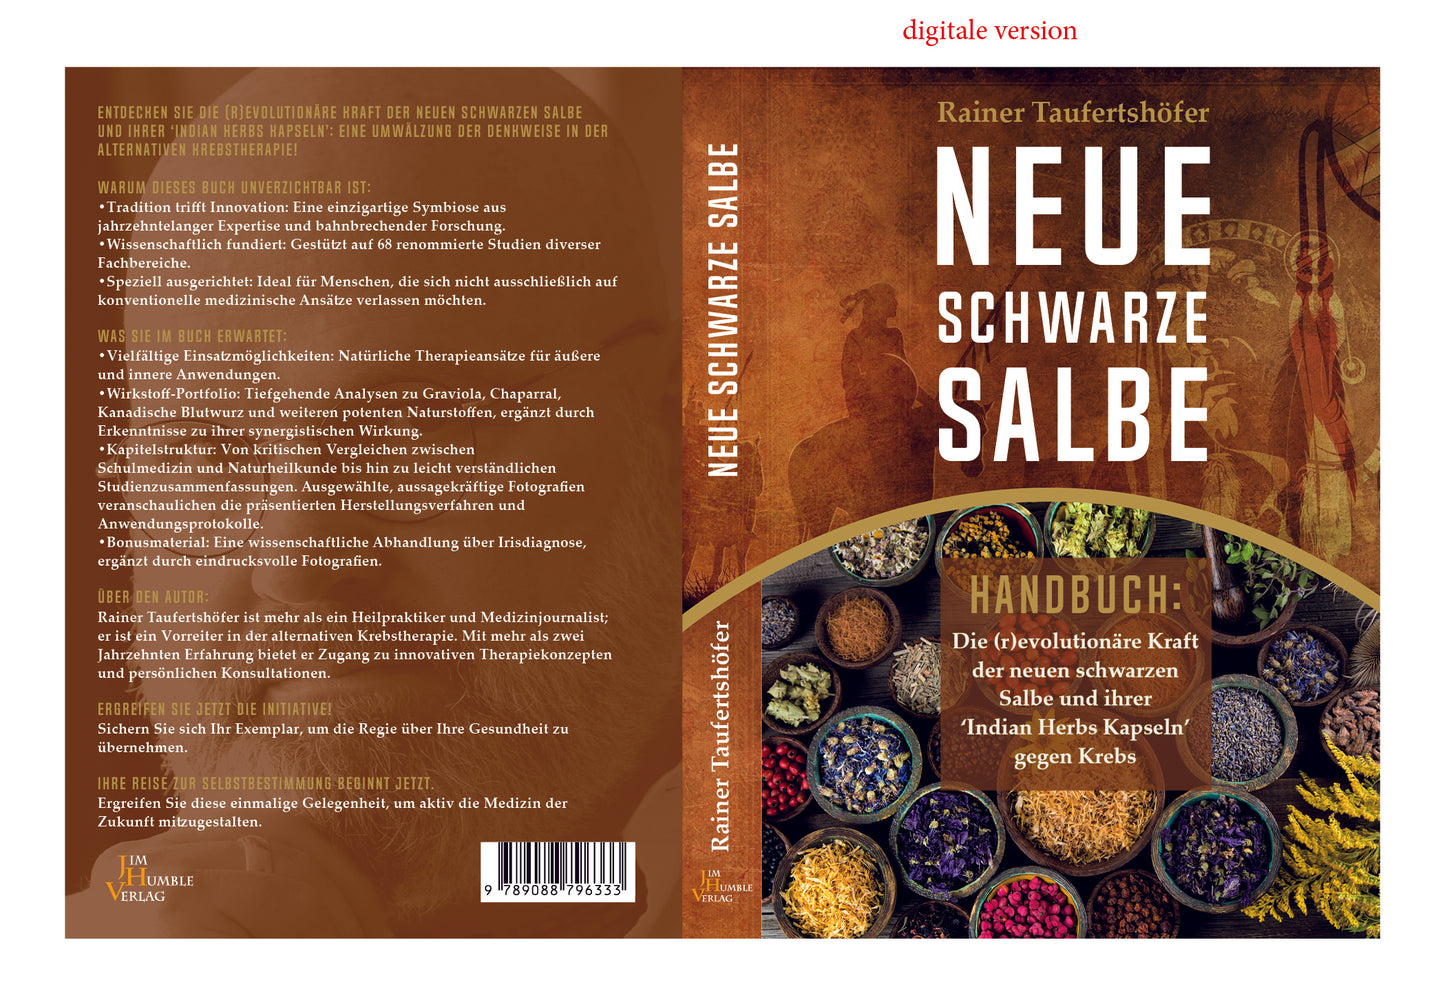 Neue Schwarze Salbe - Handbuch: Die (r)evolutionäre Kraft der neuen schwarzen Salbe und ihrer 'Indian Herbs Kapseln' gegen Krebs